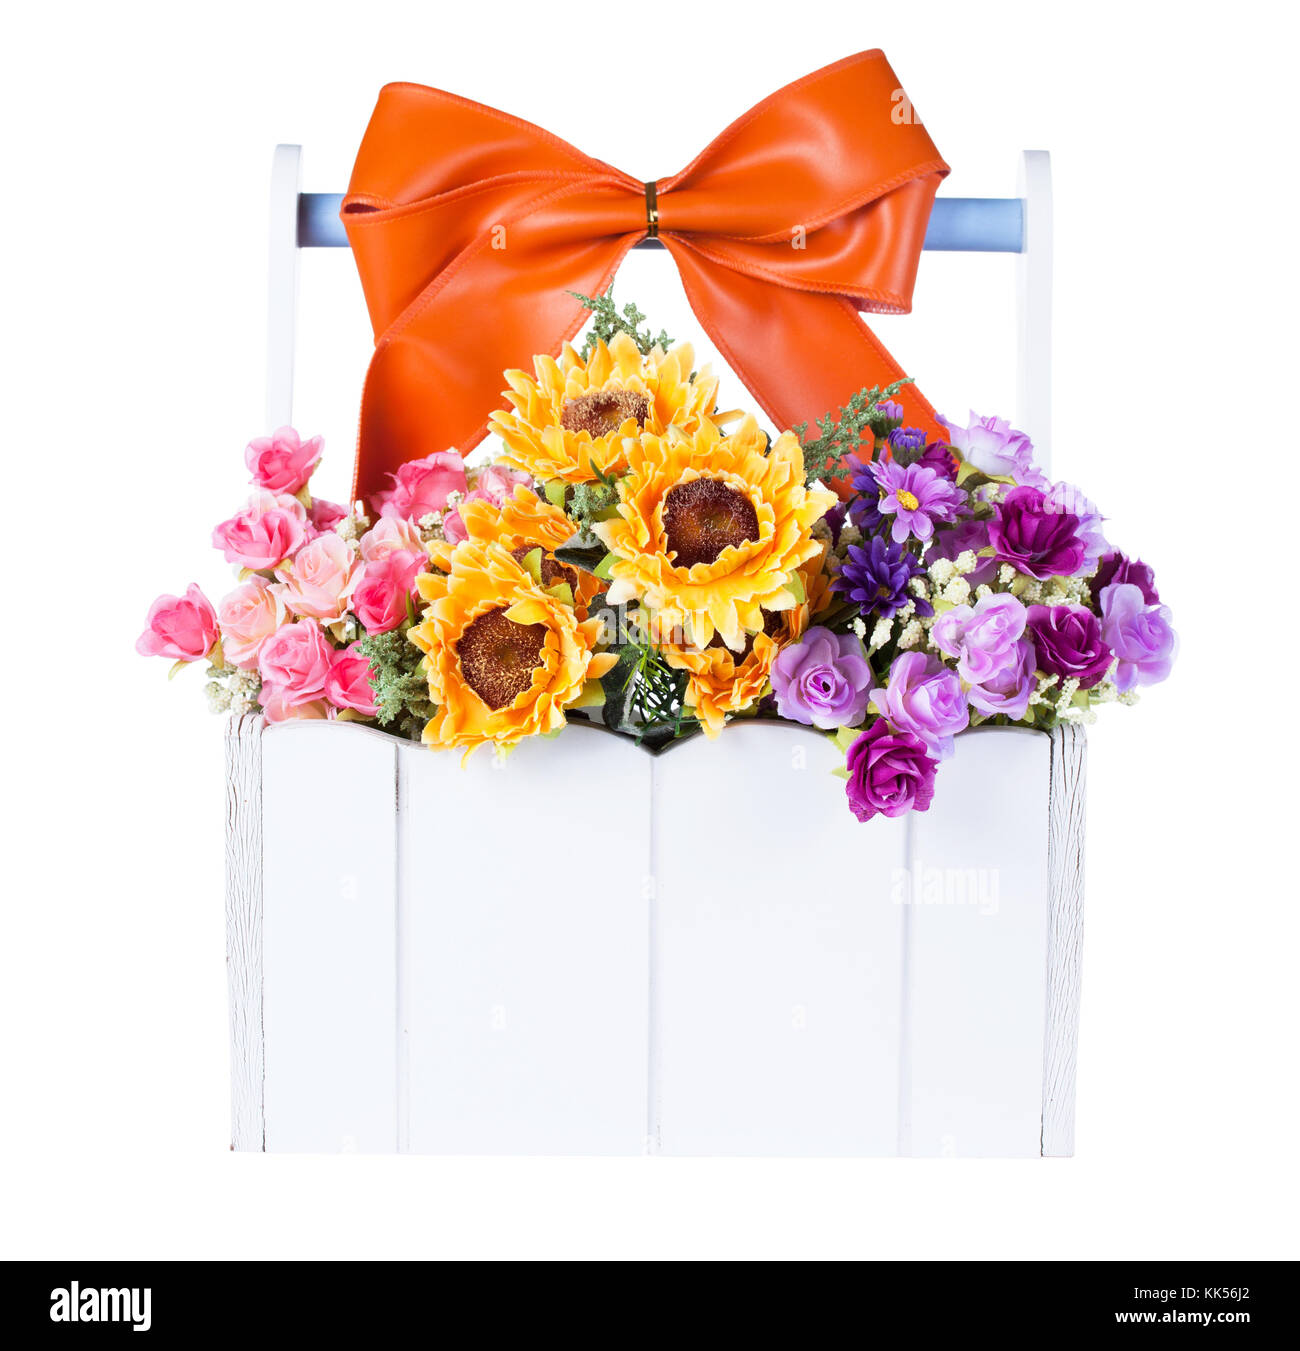 Composición floral con flor artificial en canasta blanca Fotografía de  stock - Alamy